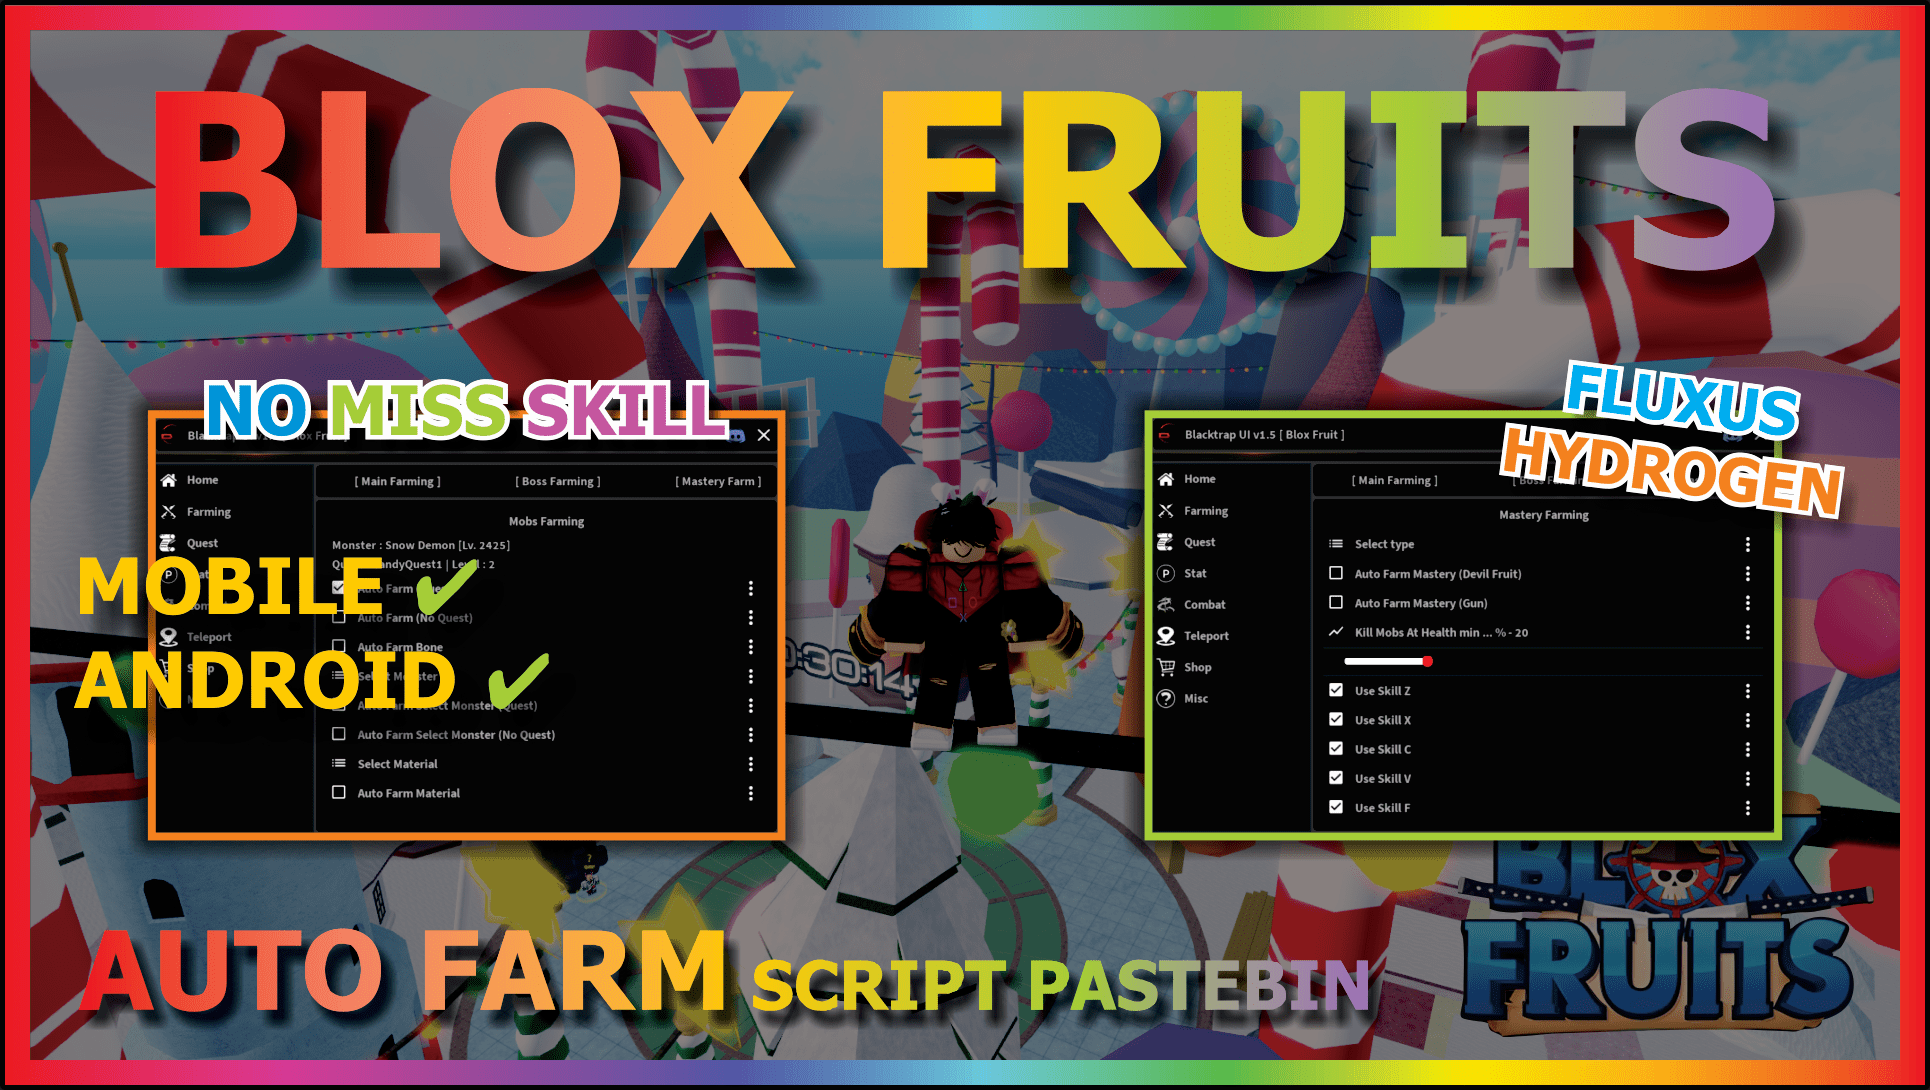 blox fruits script update race v4 – ScriptPastebin